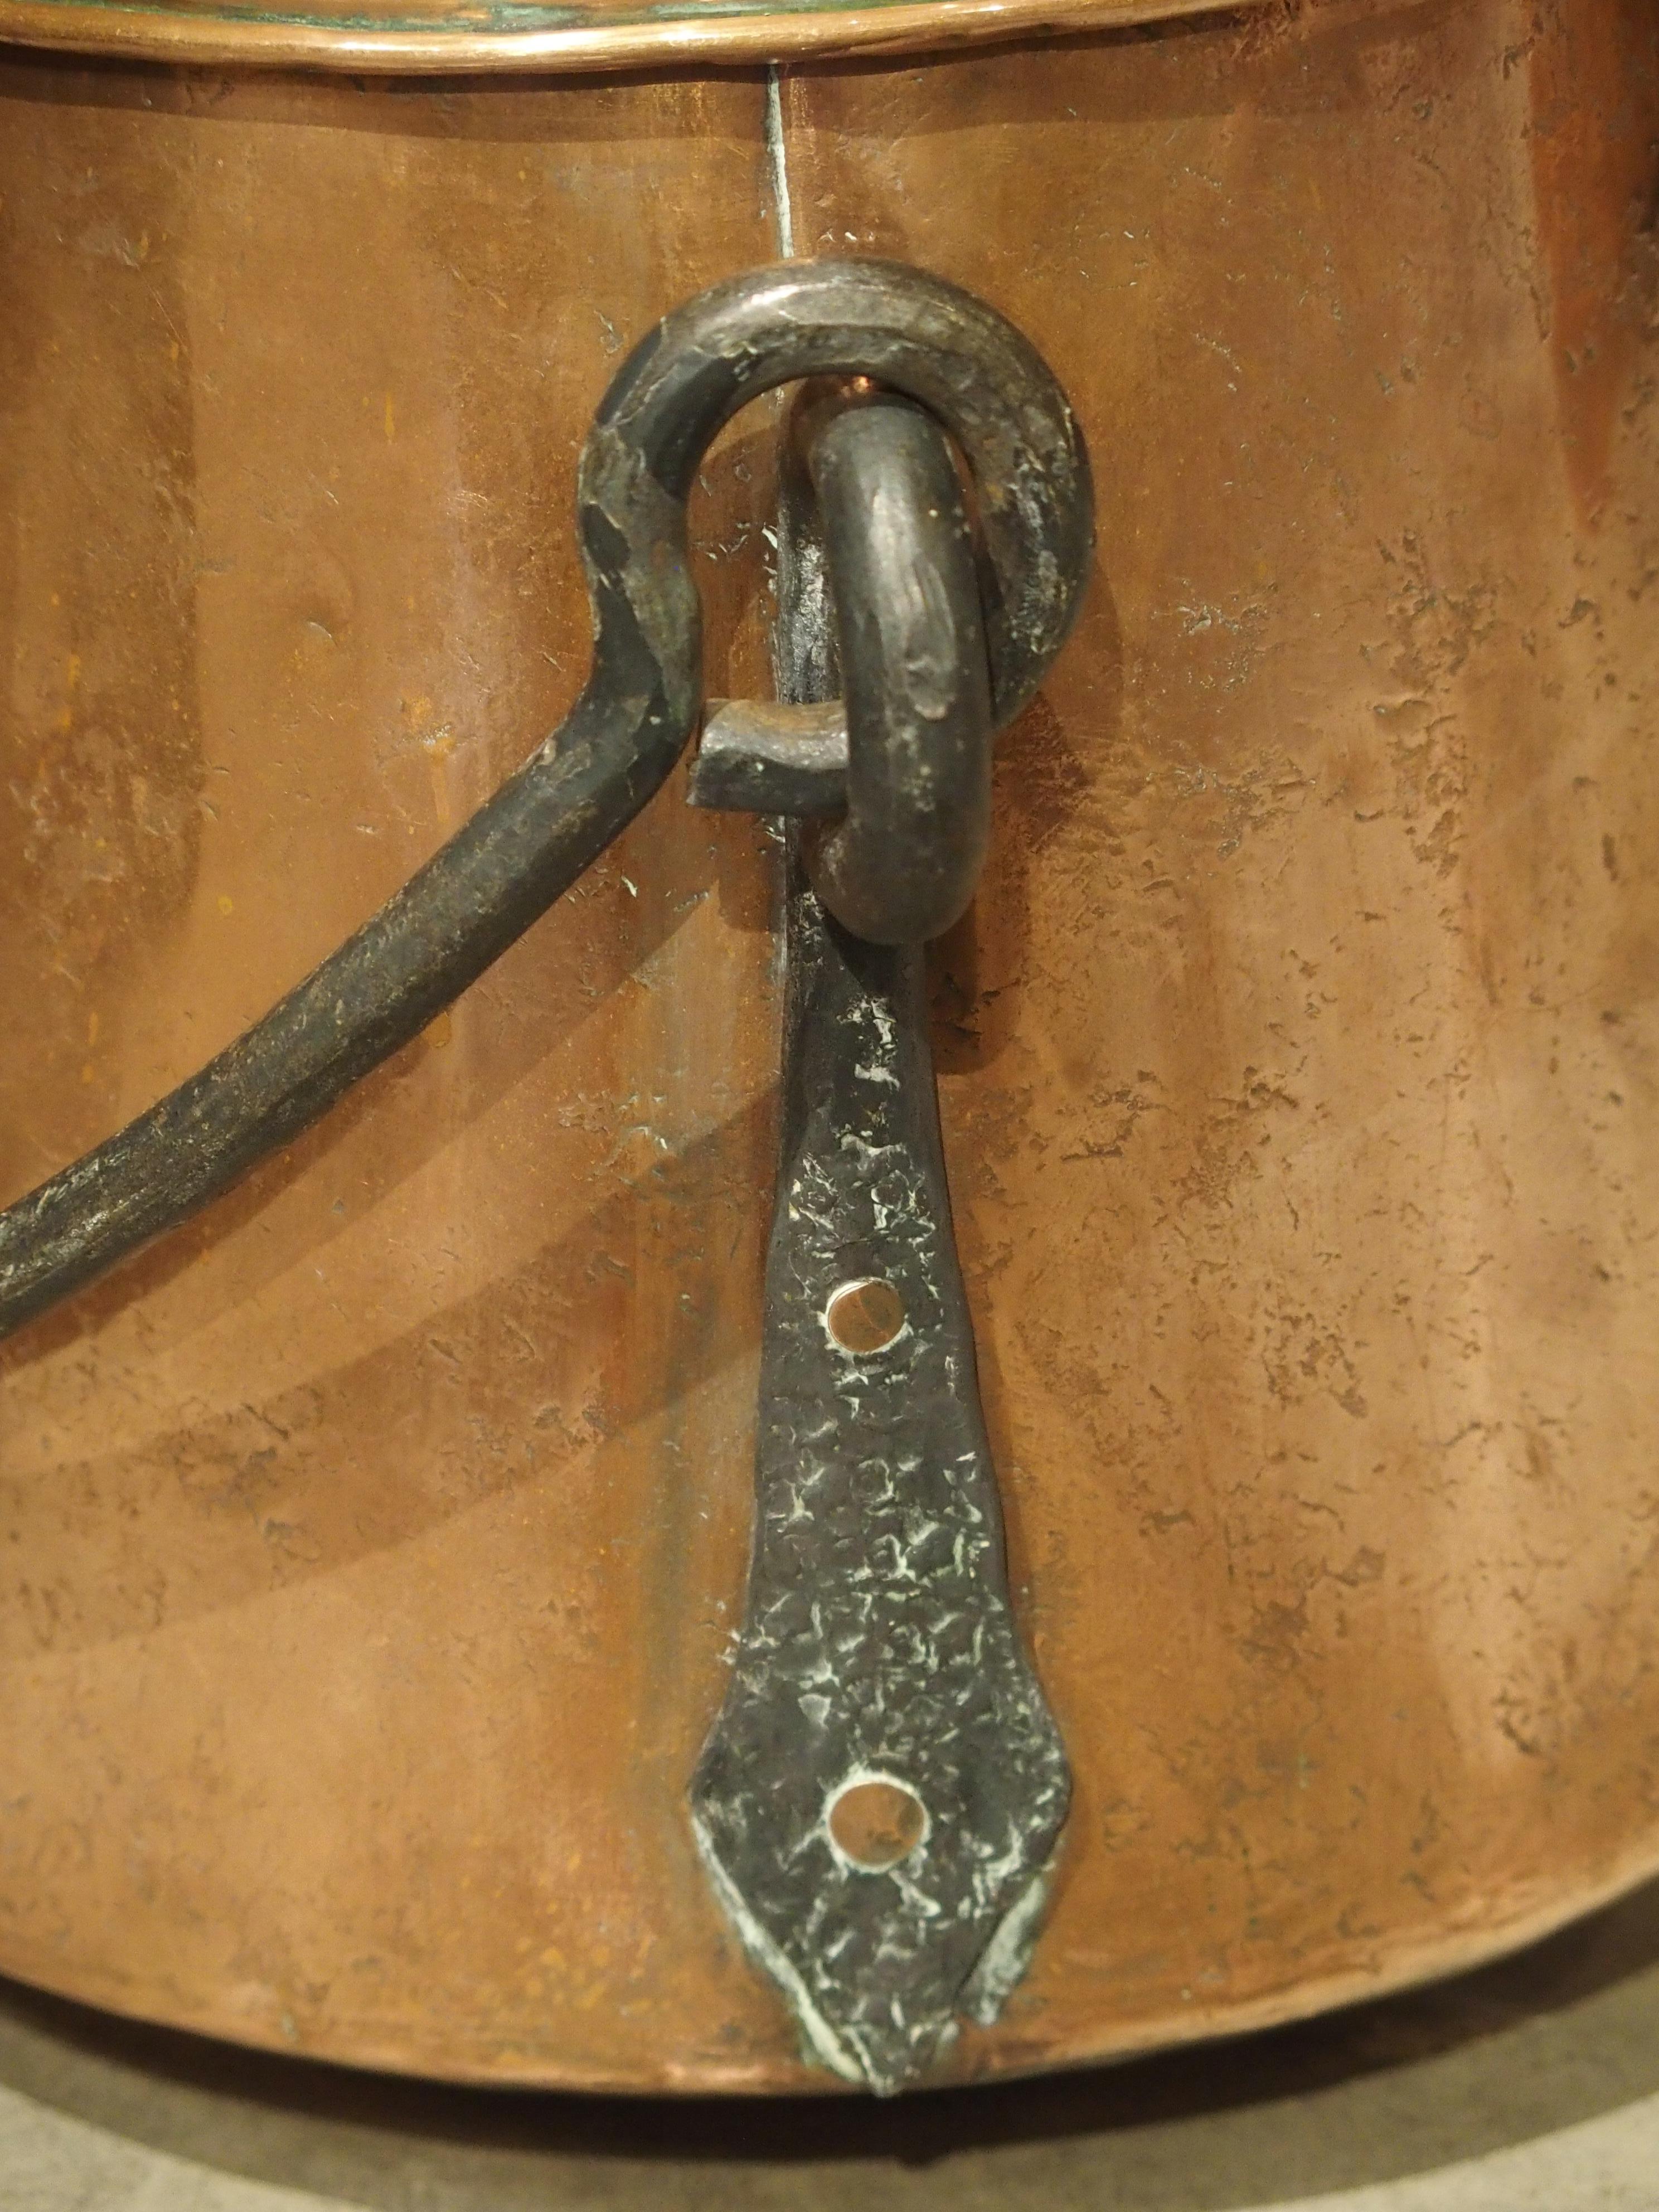 Cuivre Chaudron en cuivre français du début du 18e siècle avec grande poignée en fer forgé